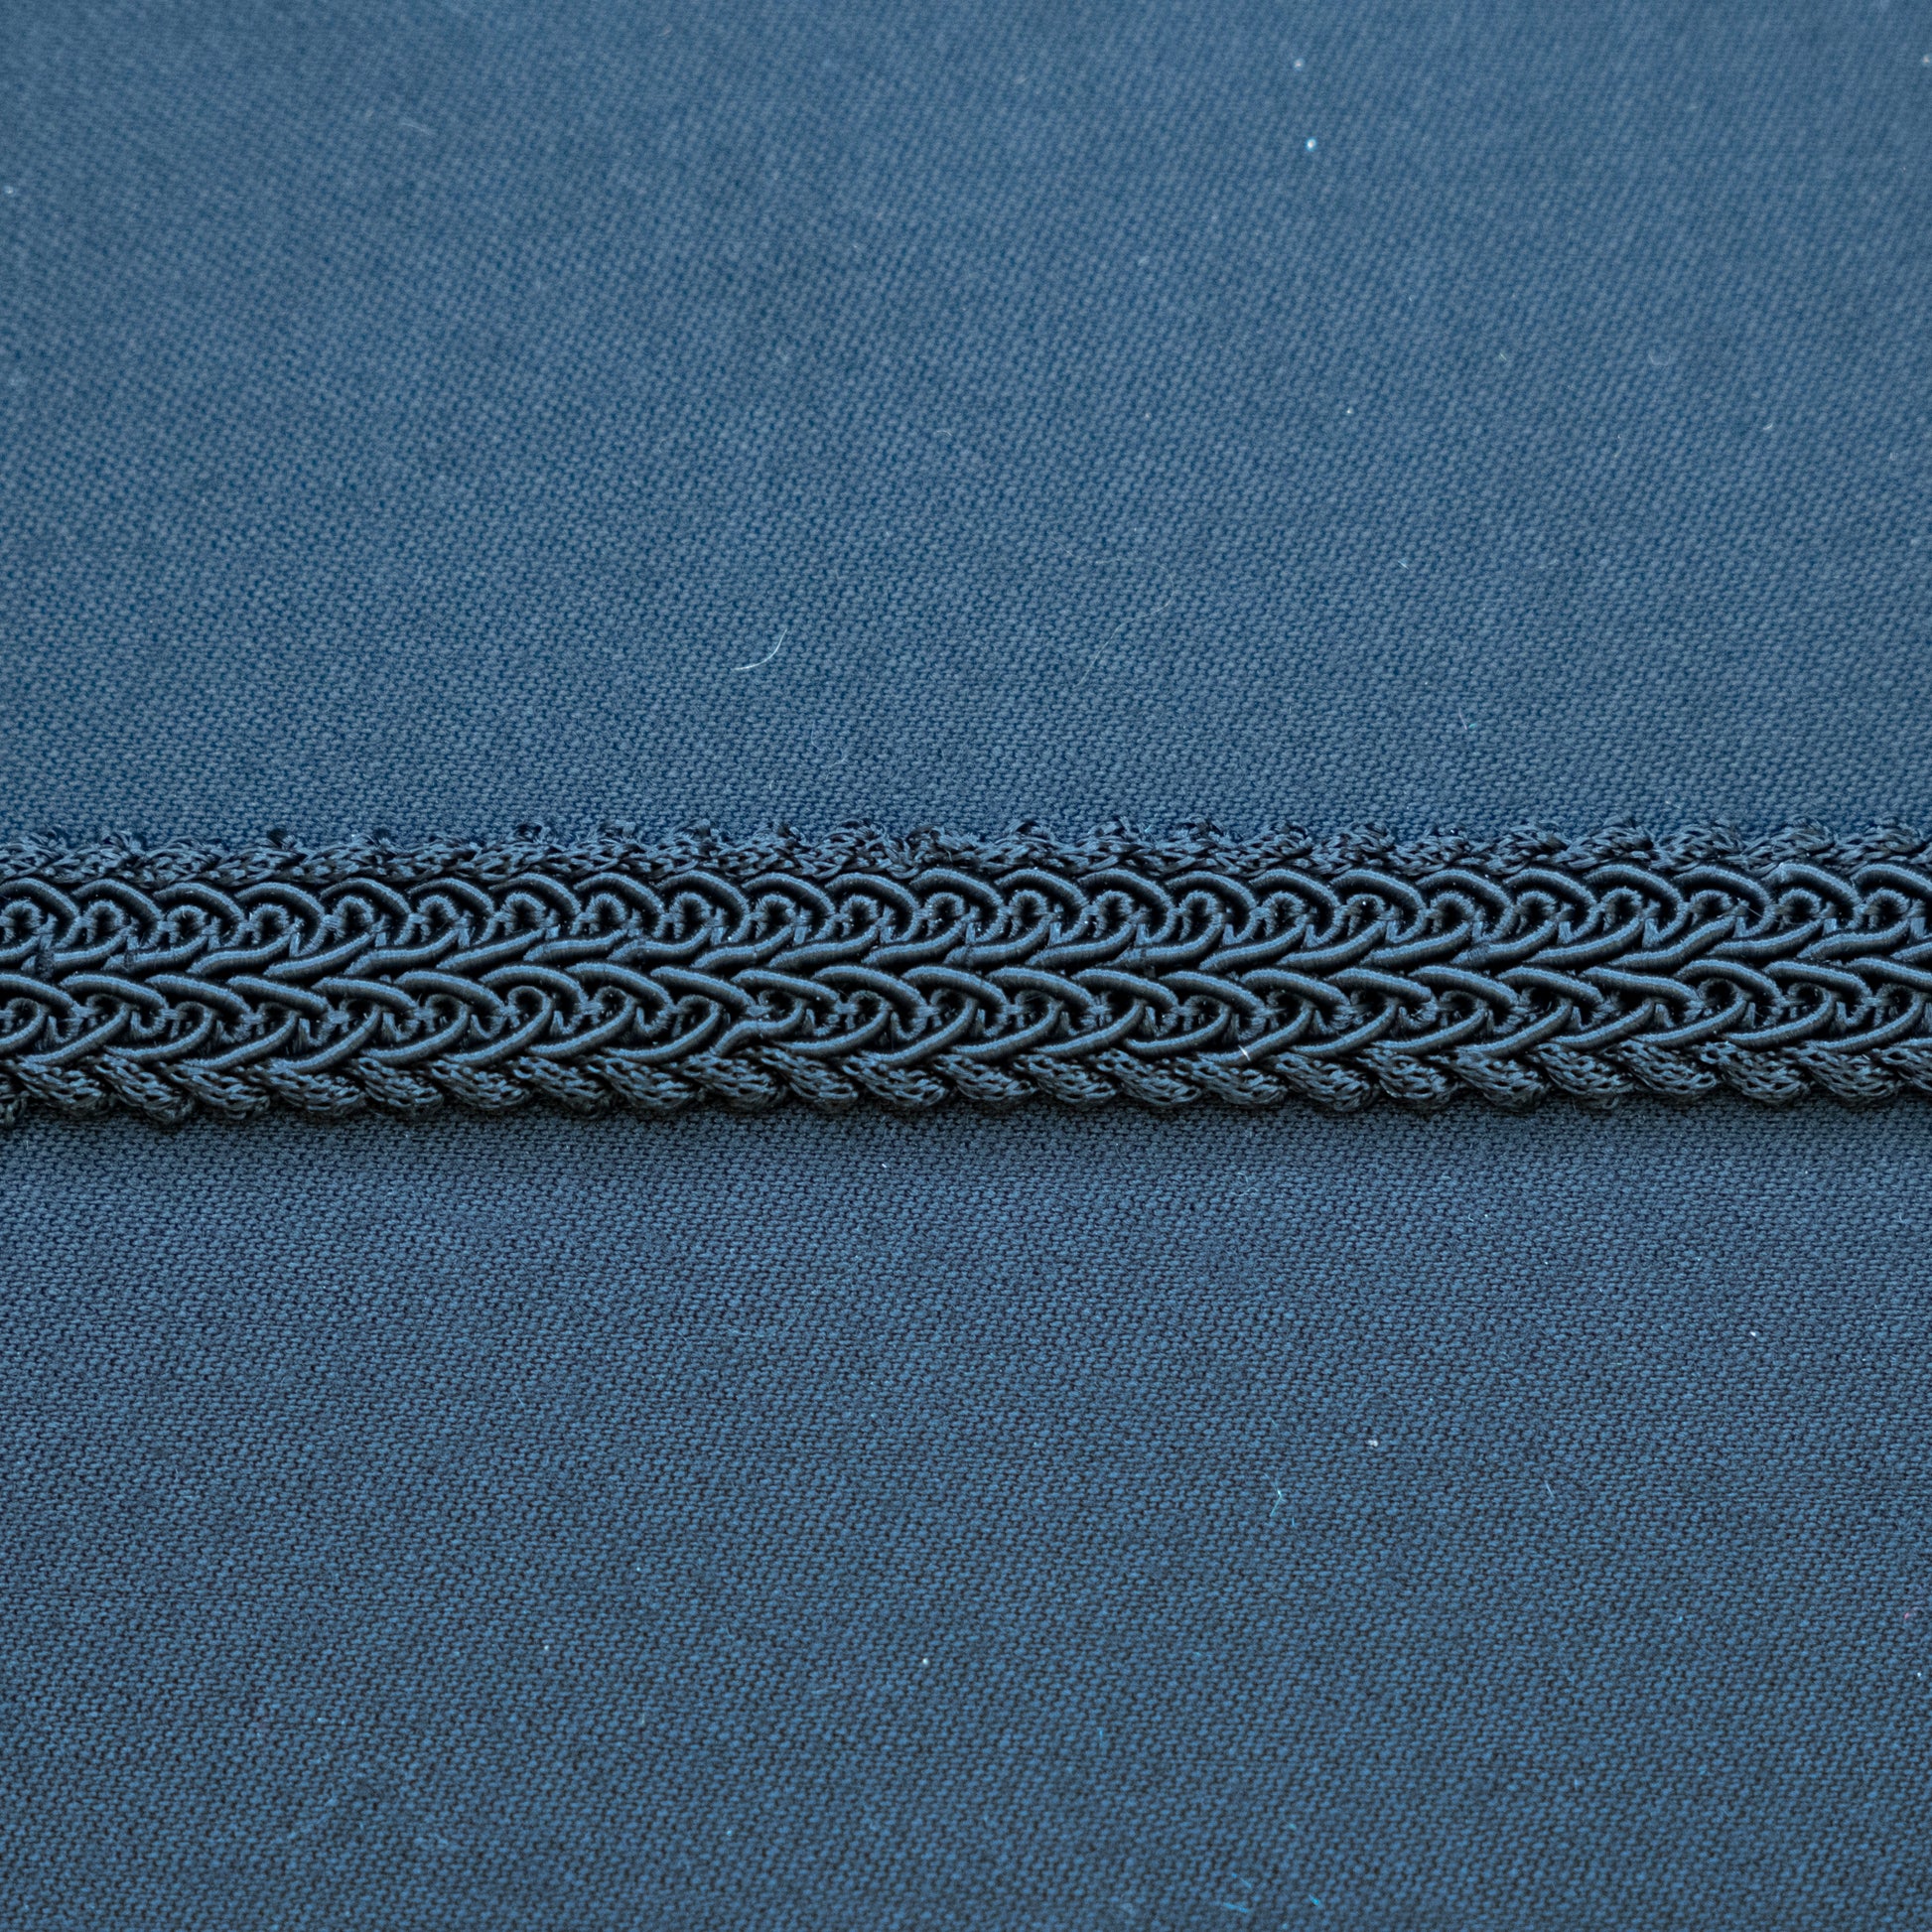 Klassisk svart agraman bånd til bunad. Bredde 17 mm. Mye brukt innenfor kantebånd på beltestakkforkle.